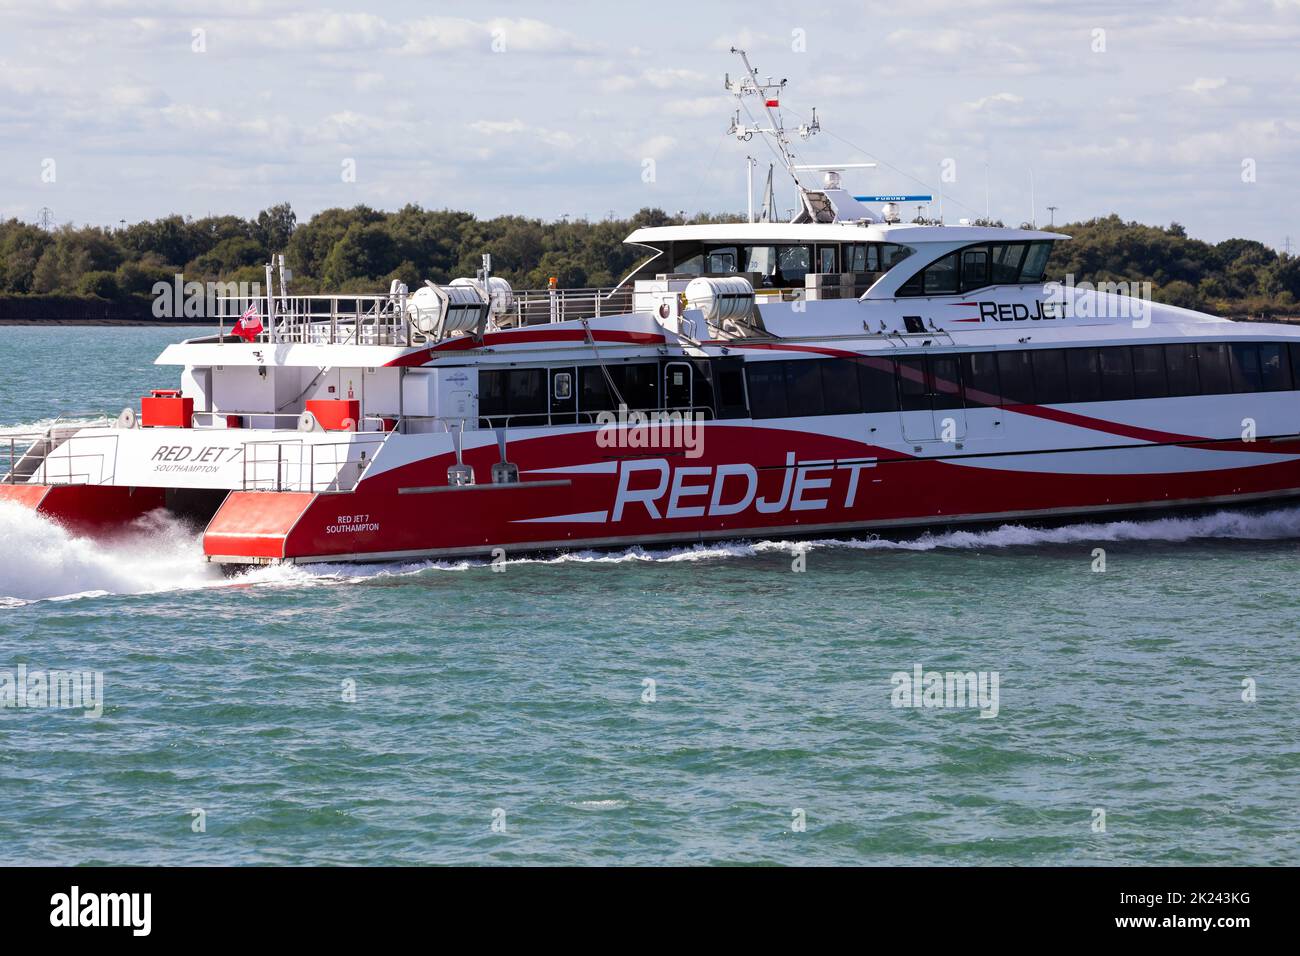 REDJET high speed catamaran in Southampton, UK Stock Photo